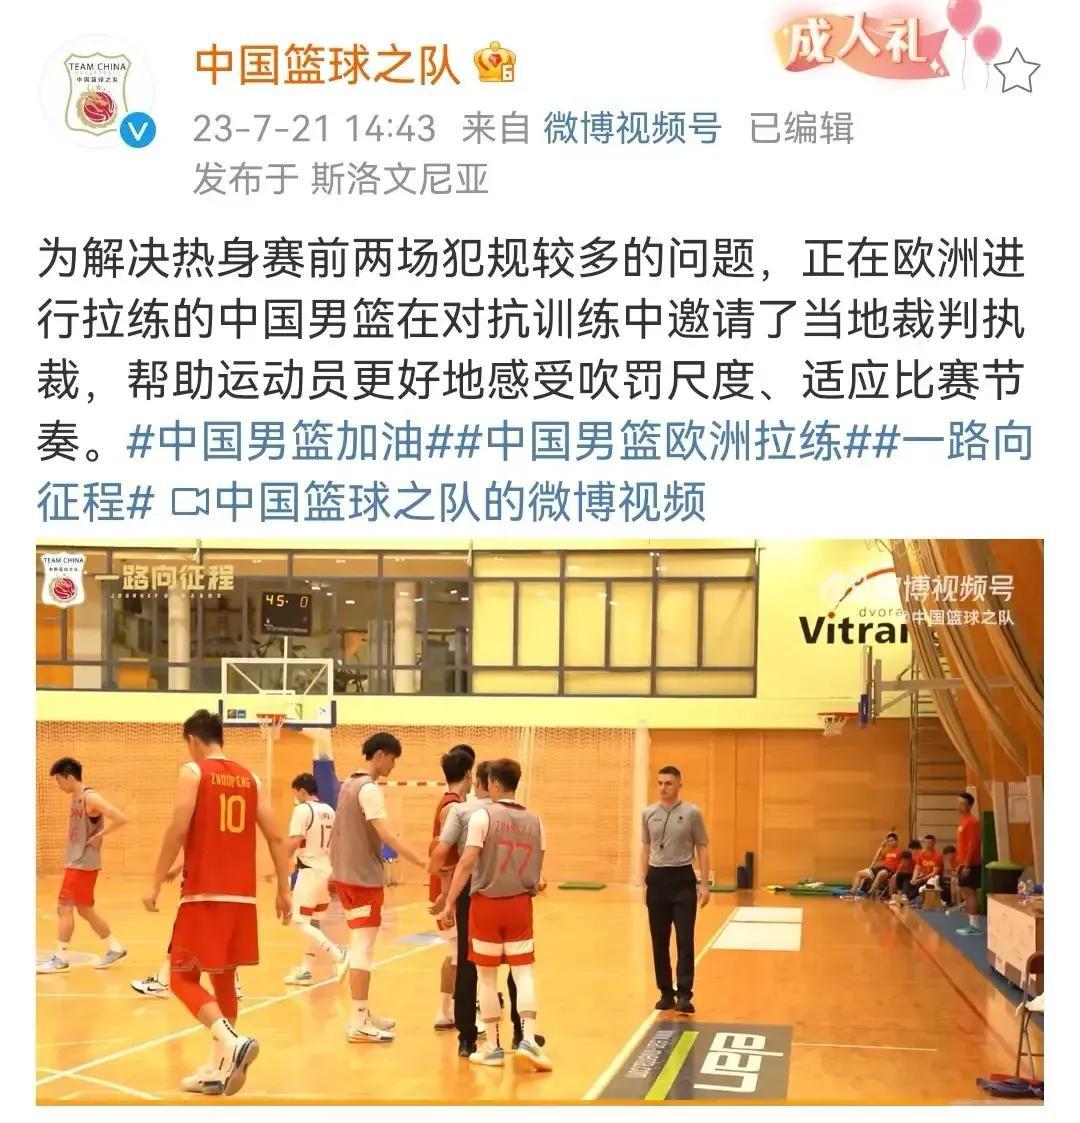 就热身赛犯规过多的问题，中国男篮邀请当地裁判加入到中国男篮对抗训练中，以适应裁判(1)